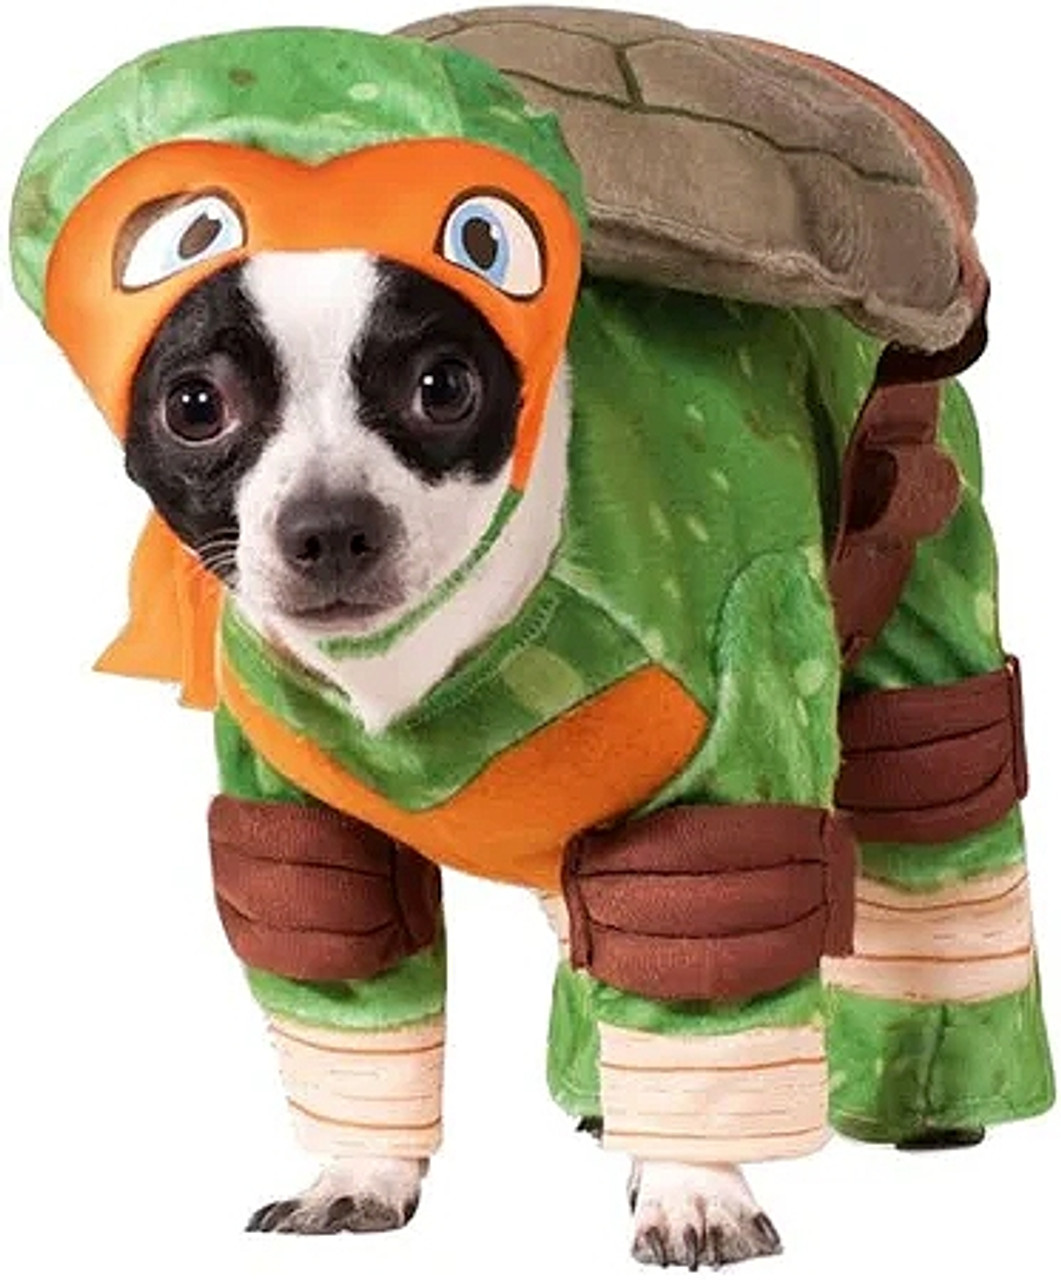 Teenage Mutant Ninja Turtles TMNT Pet Costume